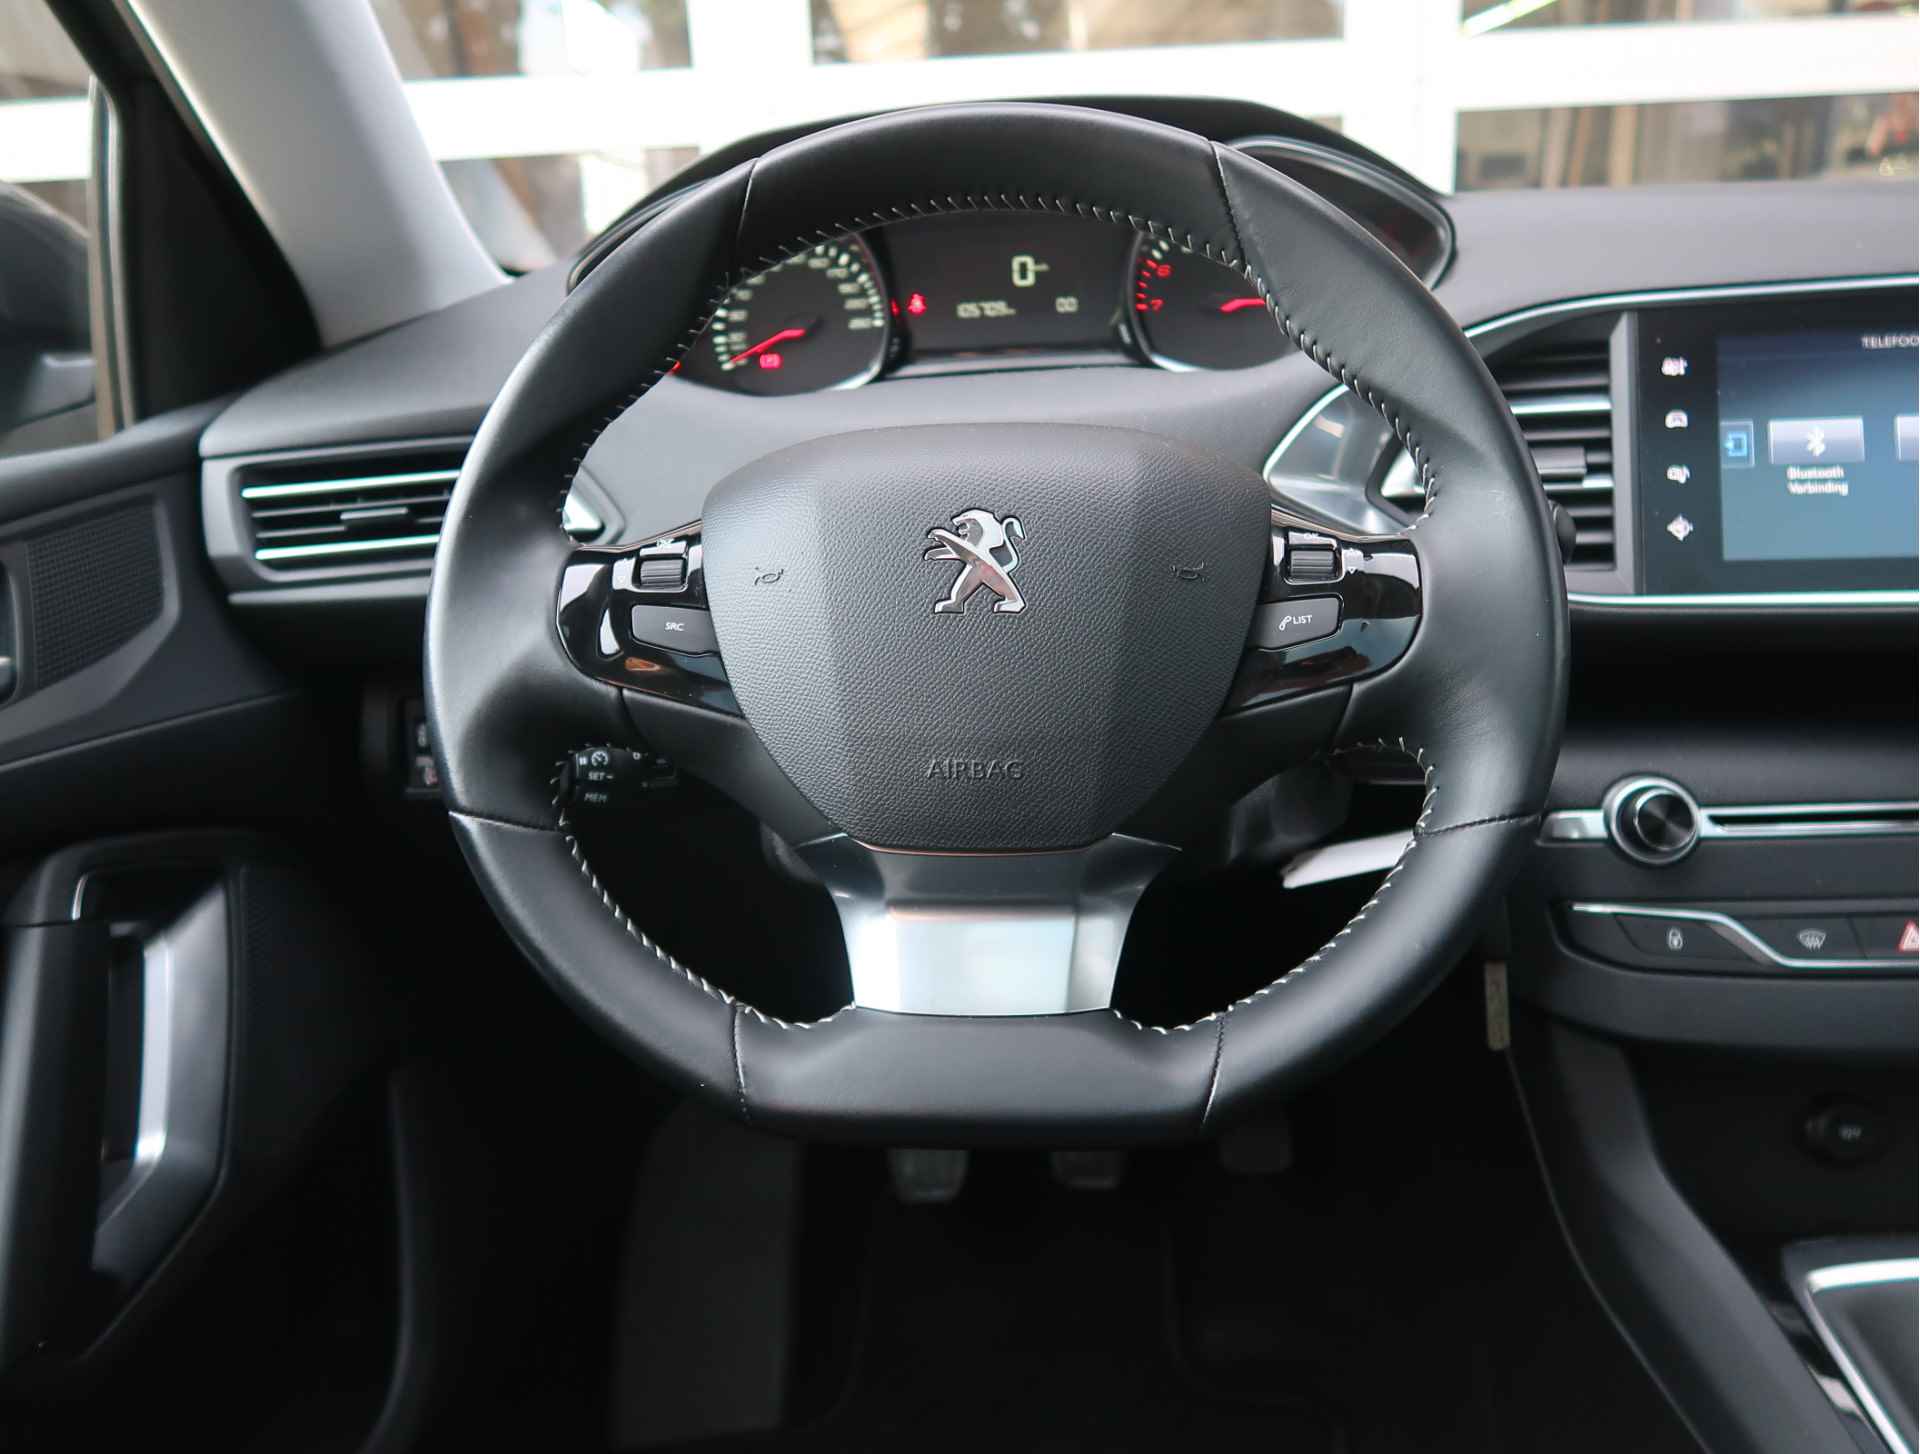 Peugeot 308 SW 110 PK Benzine * Panoramadak * Navigatie * L.M. Velgen * DAB+ Radio + CD * Cruise & Climate Control * Voor en achter Parkeersensoren* Vierseizoenenbanden * - 15/45